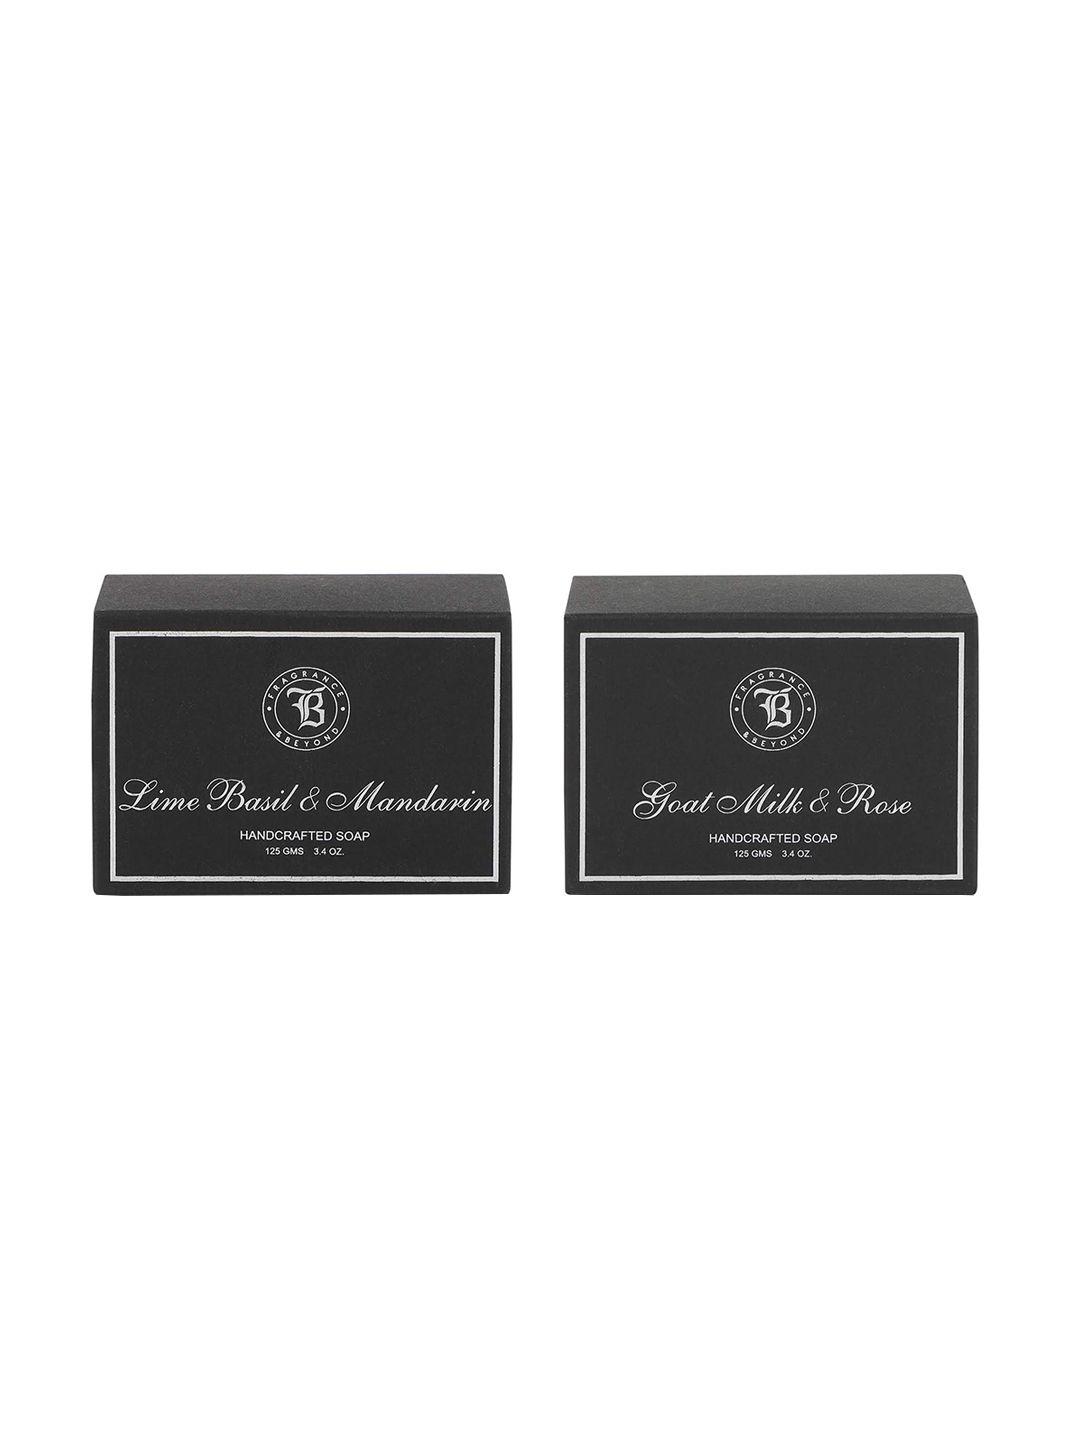 fragrance & beyond set of 2 natural soaps - goat milk & lime basil - 125g each